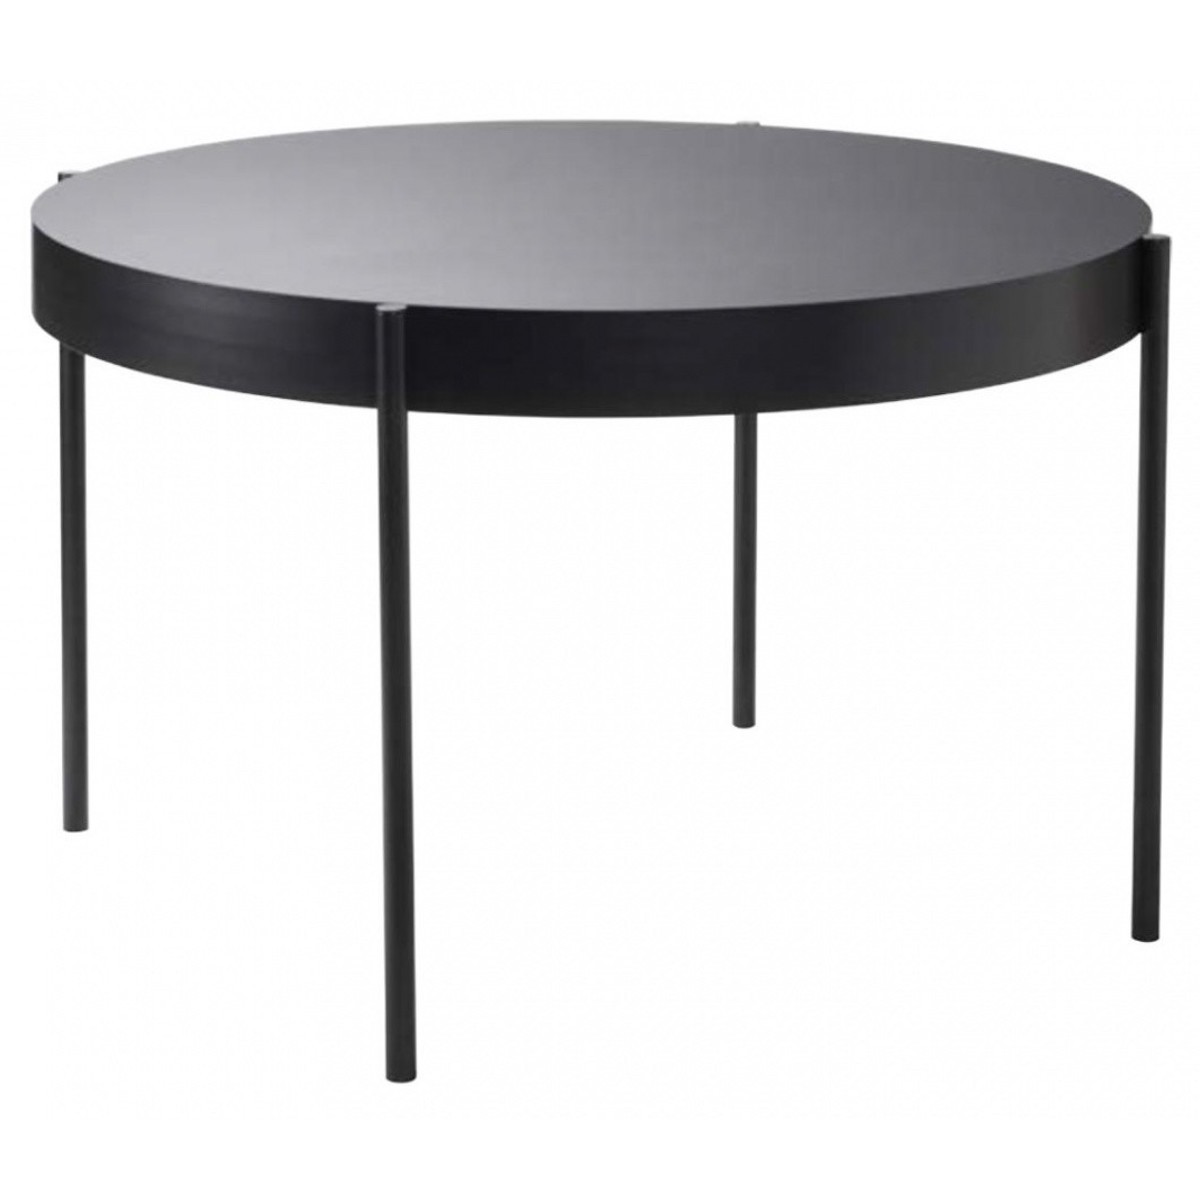 Ø120 - black - Series 430 table